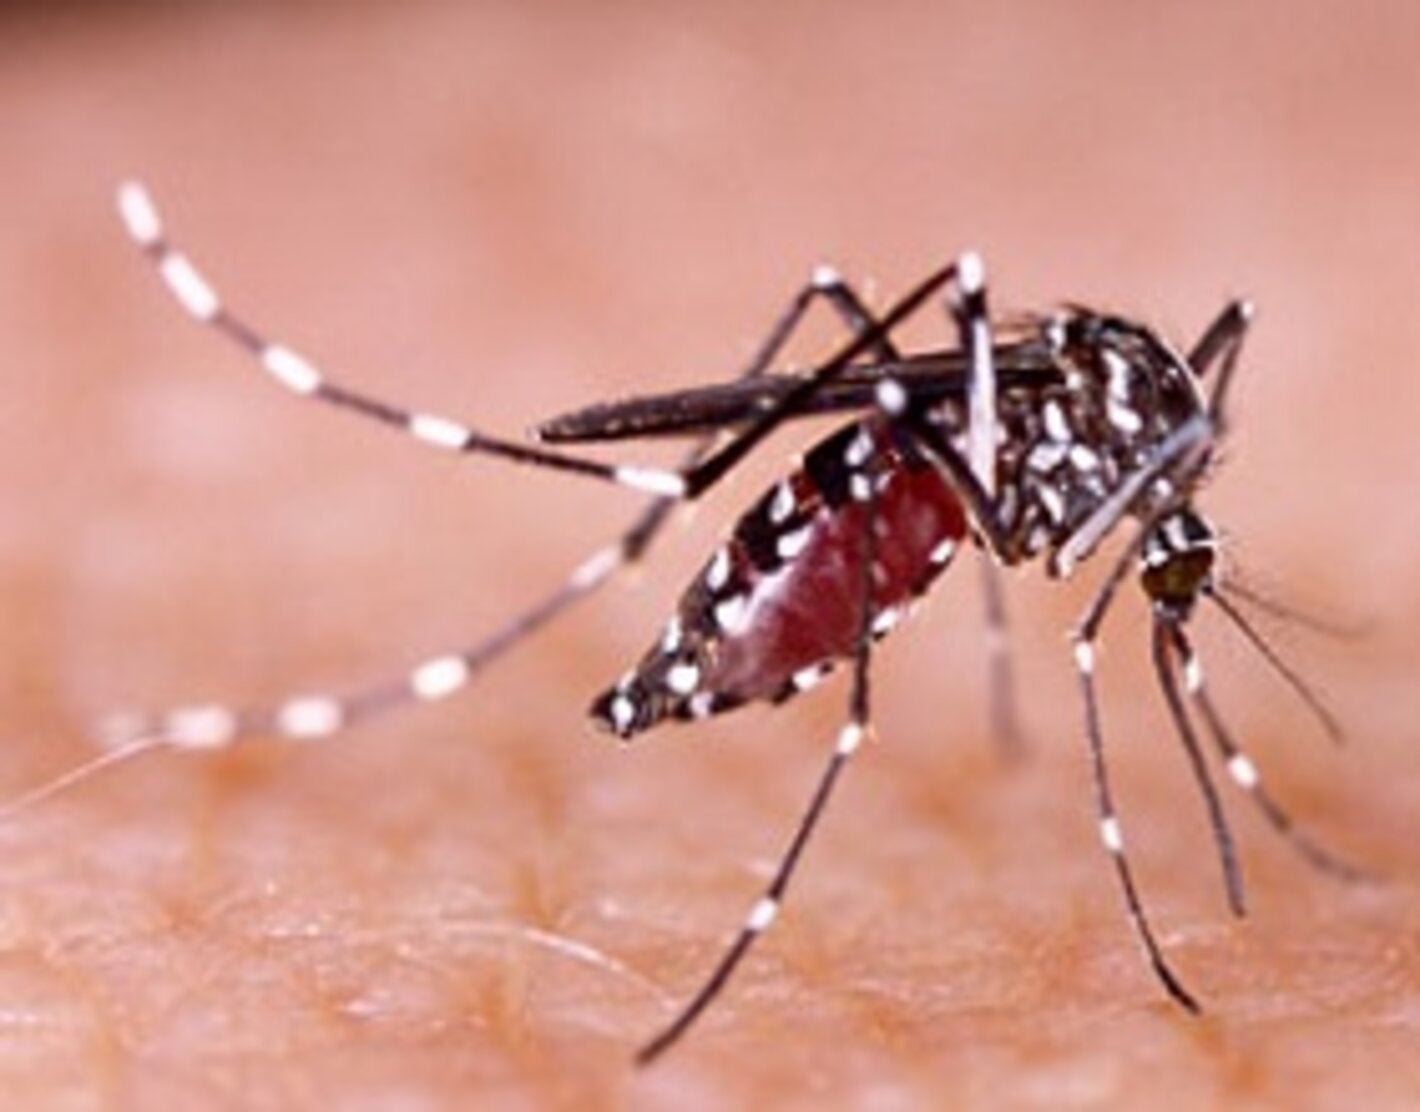 Americana (SP) registra mais de 400 casos de dengue em apenas uma semana -  Dengue - Extra Online